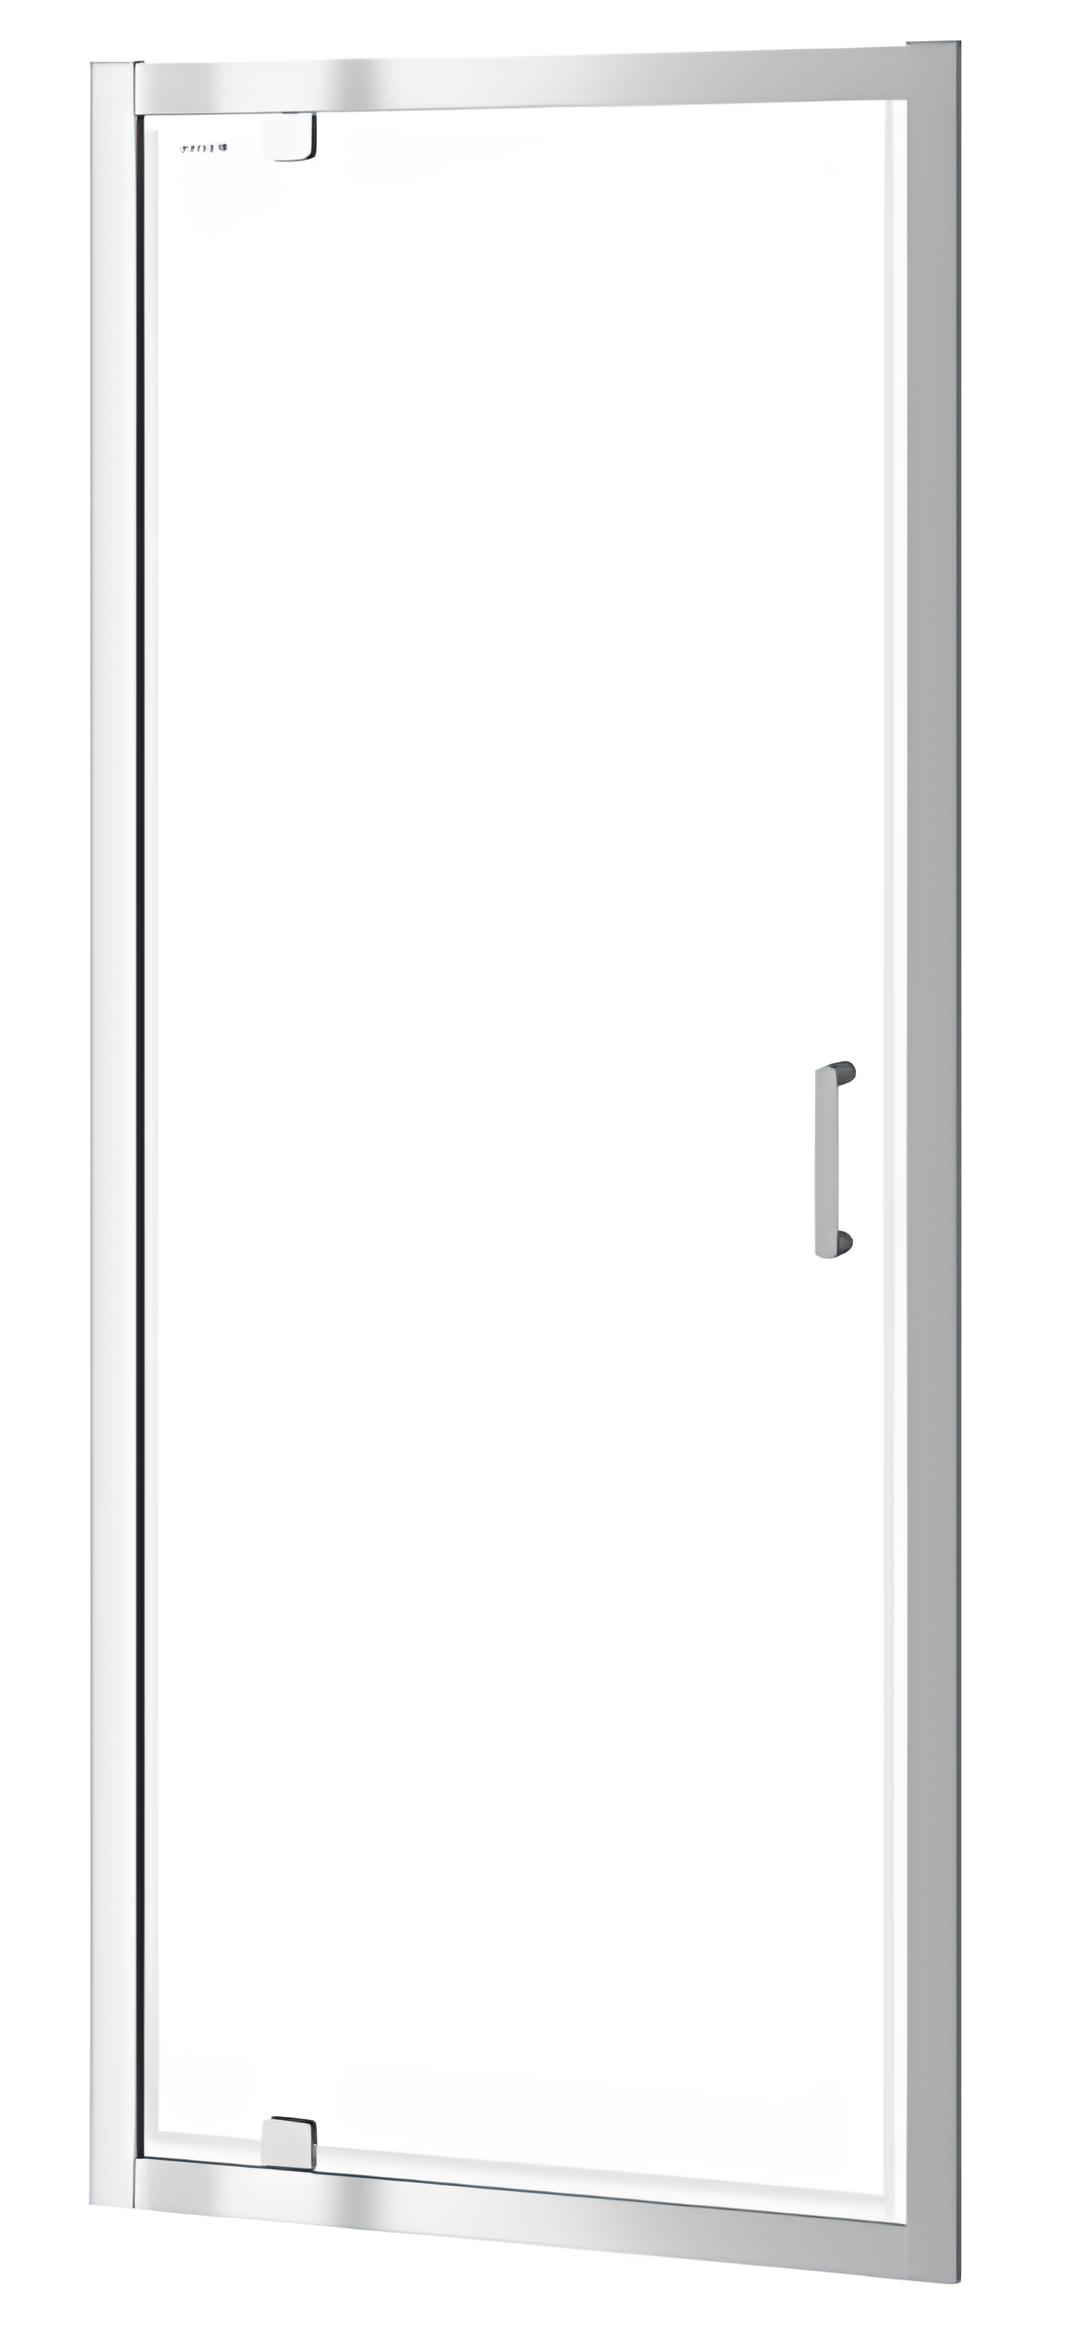 Двери душевой кабины Cersanit ZIP PIVOT 90*190 (S154-006) в интернет-магазине, главное фото